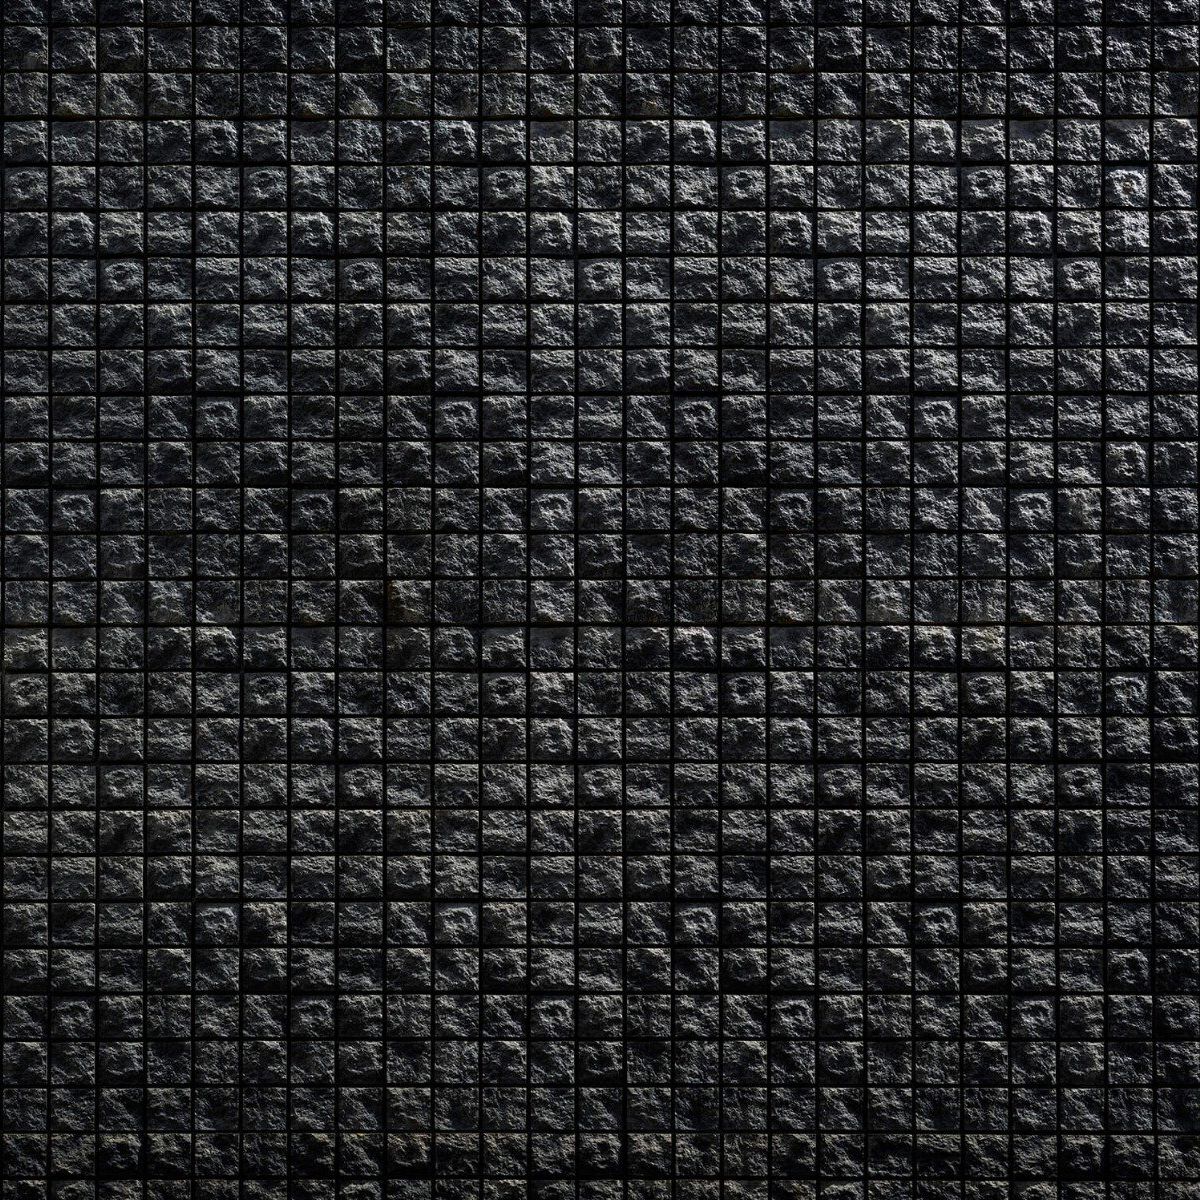 Square black stones